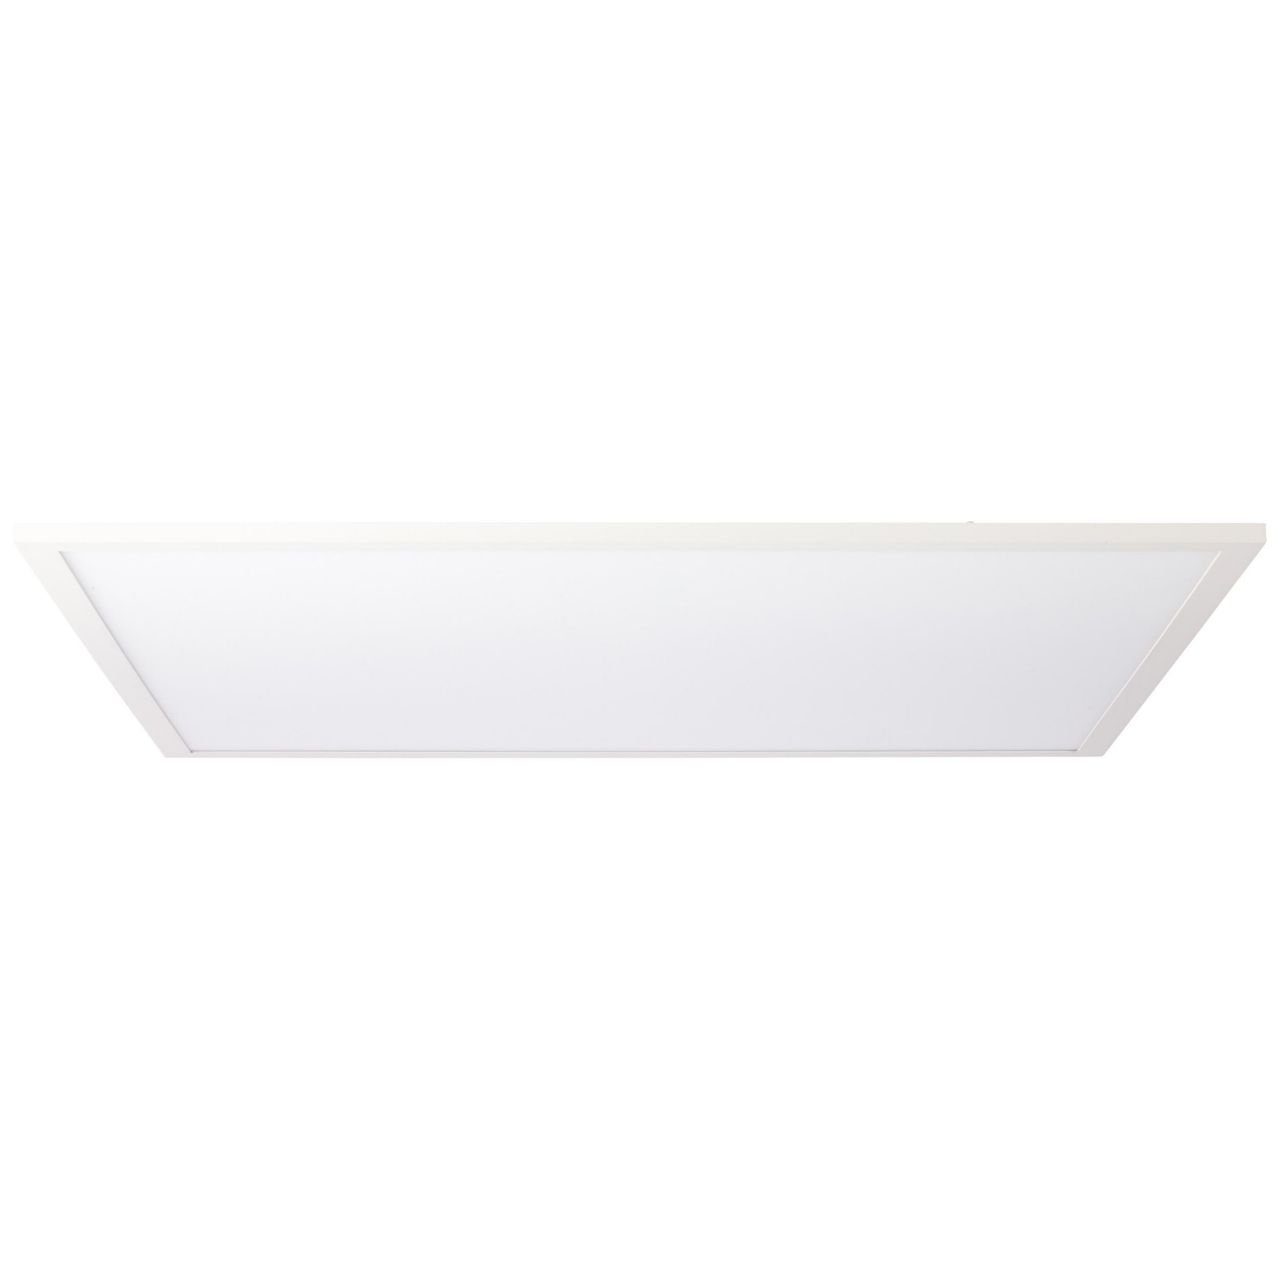 Brilliant weiß/kaltweiß 40W LED LED Buffi, Buffi 1x 4000K, 60x60cm Lampe Deckenleuchte Deckenaufbau-Paneel